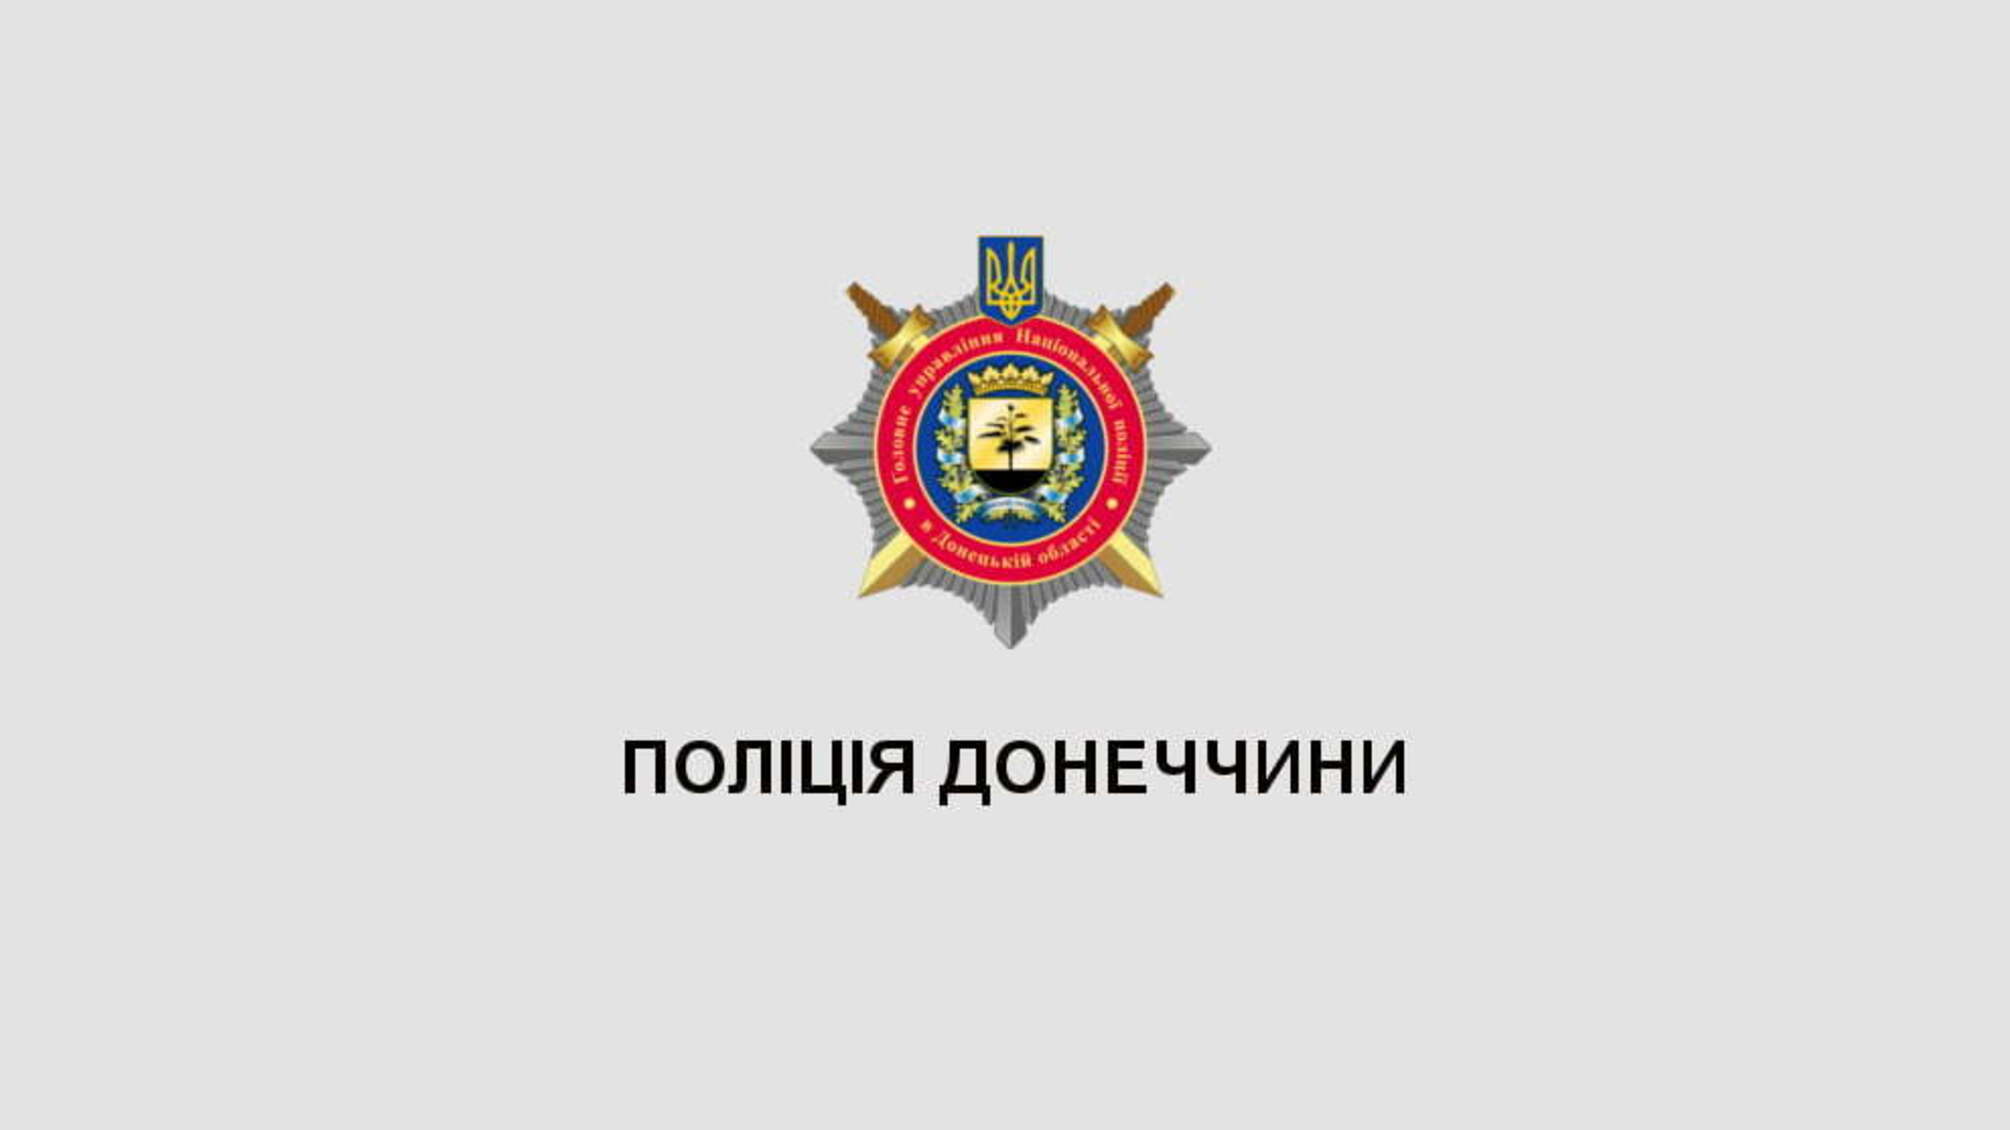 Поліцейські розслідують загибель дитини під колесами авто в Краматорську